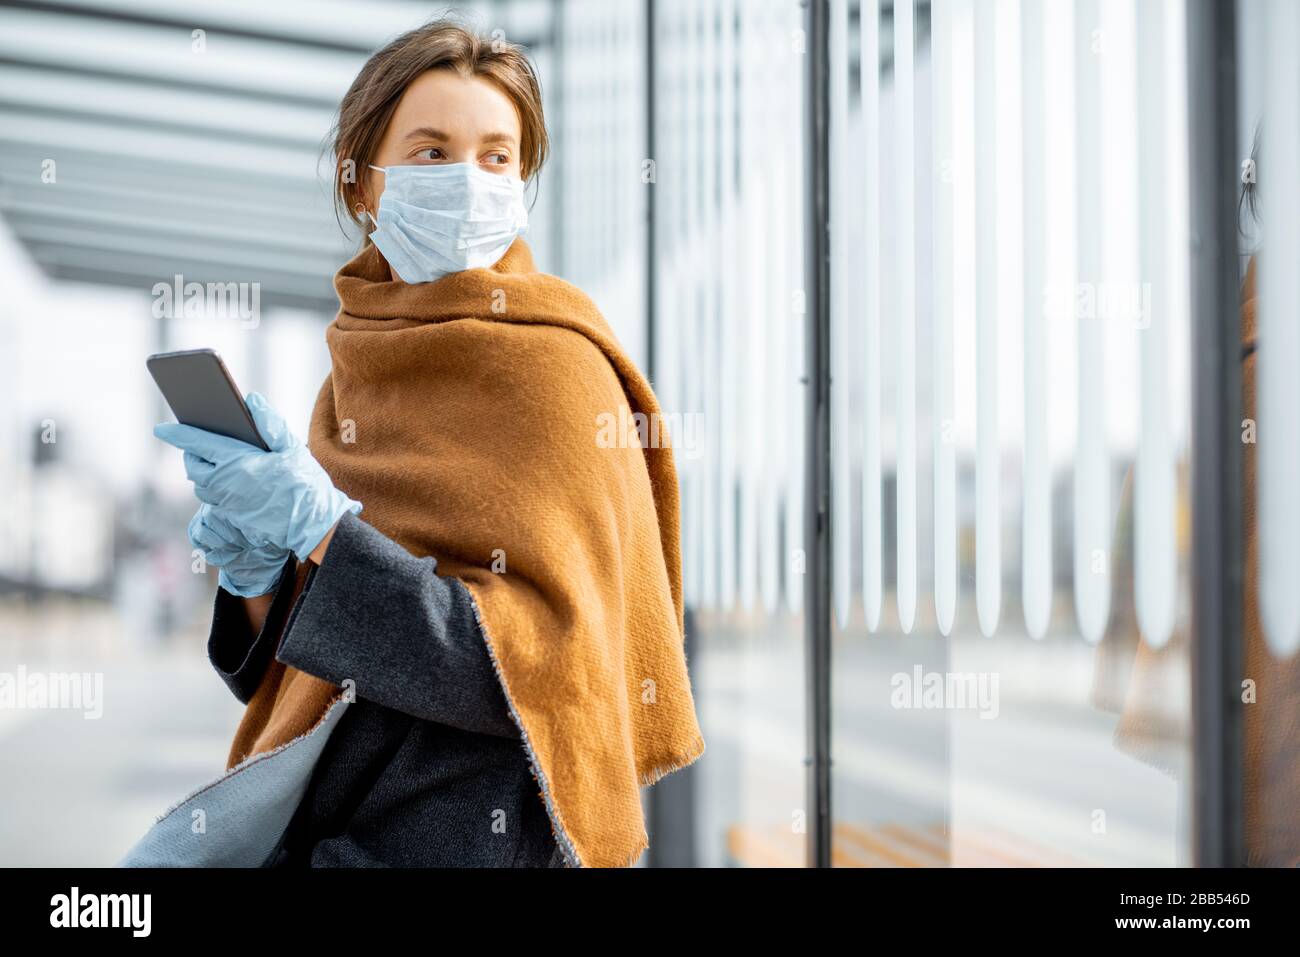 Junge Frau in Gesichtsmaske und medizinische Handschuhe mit einem Smartphone am öffentlichen Verkehrshalt während einer Epidemie. Konzept der sozialen Distanz und Online-Kommunikation Stockfoto